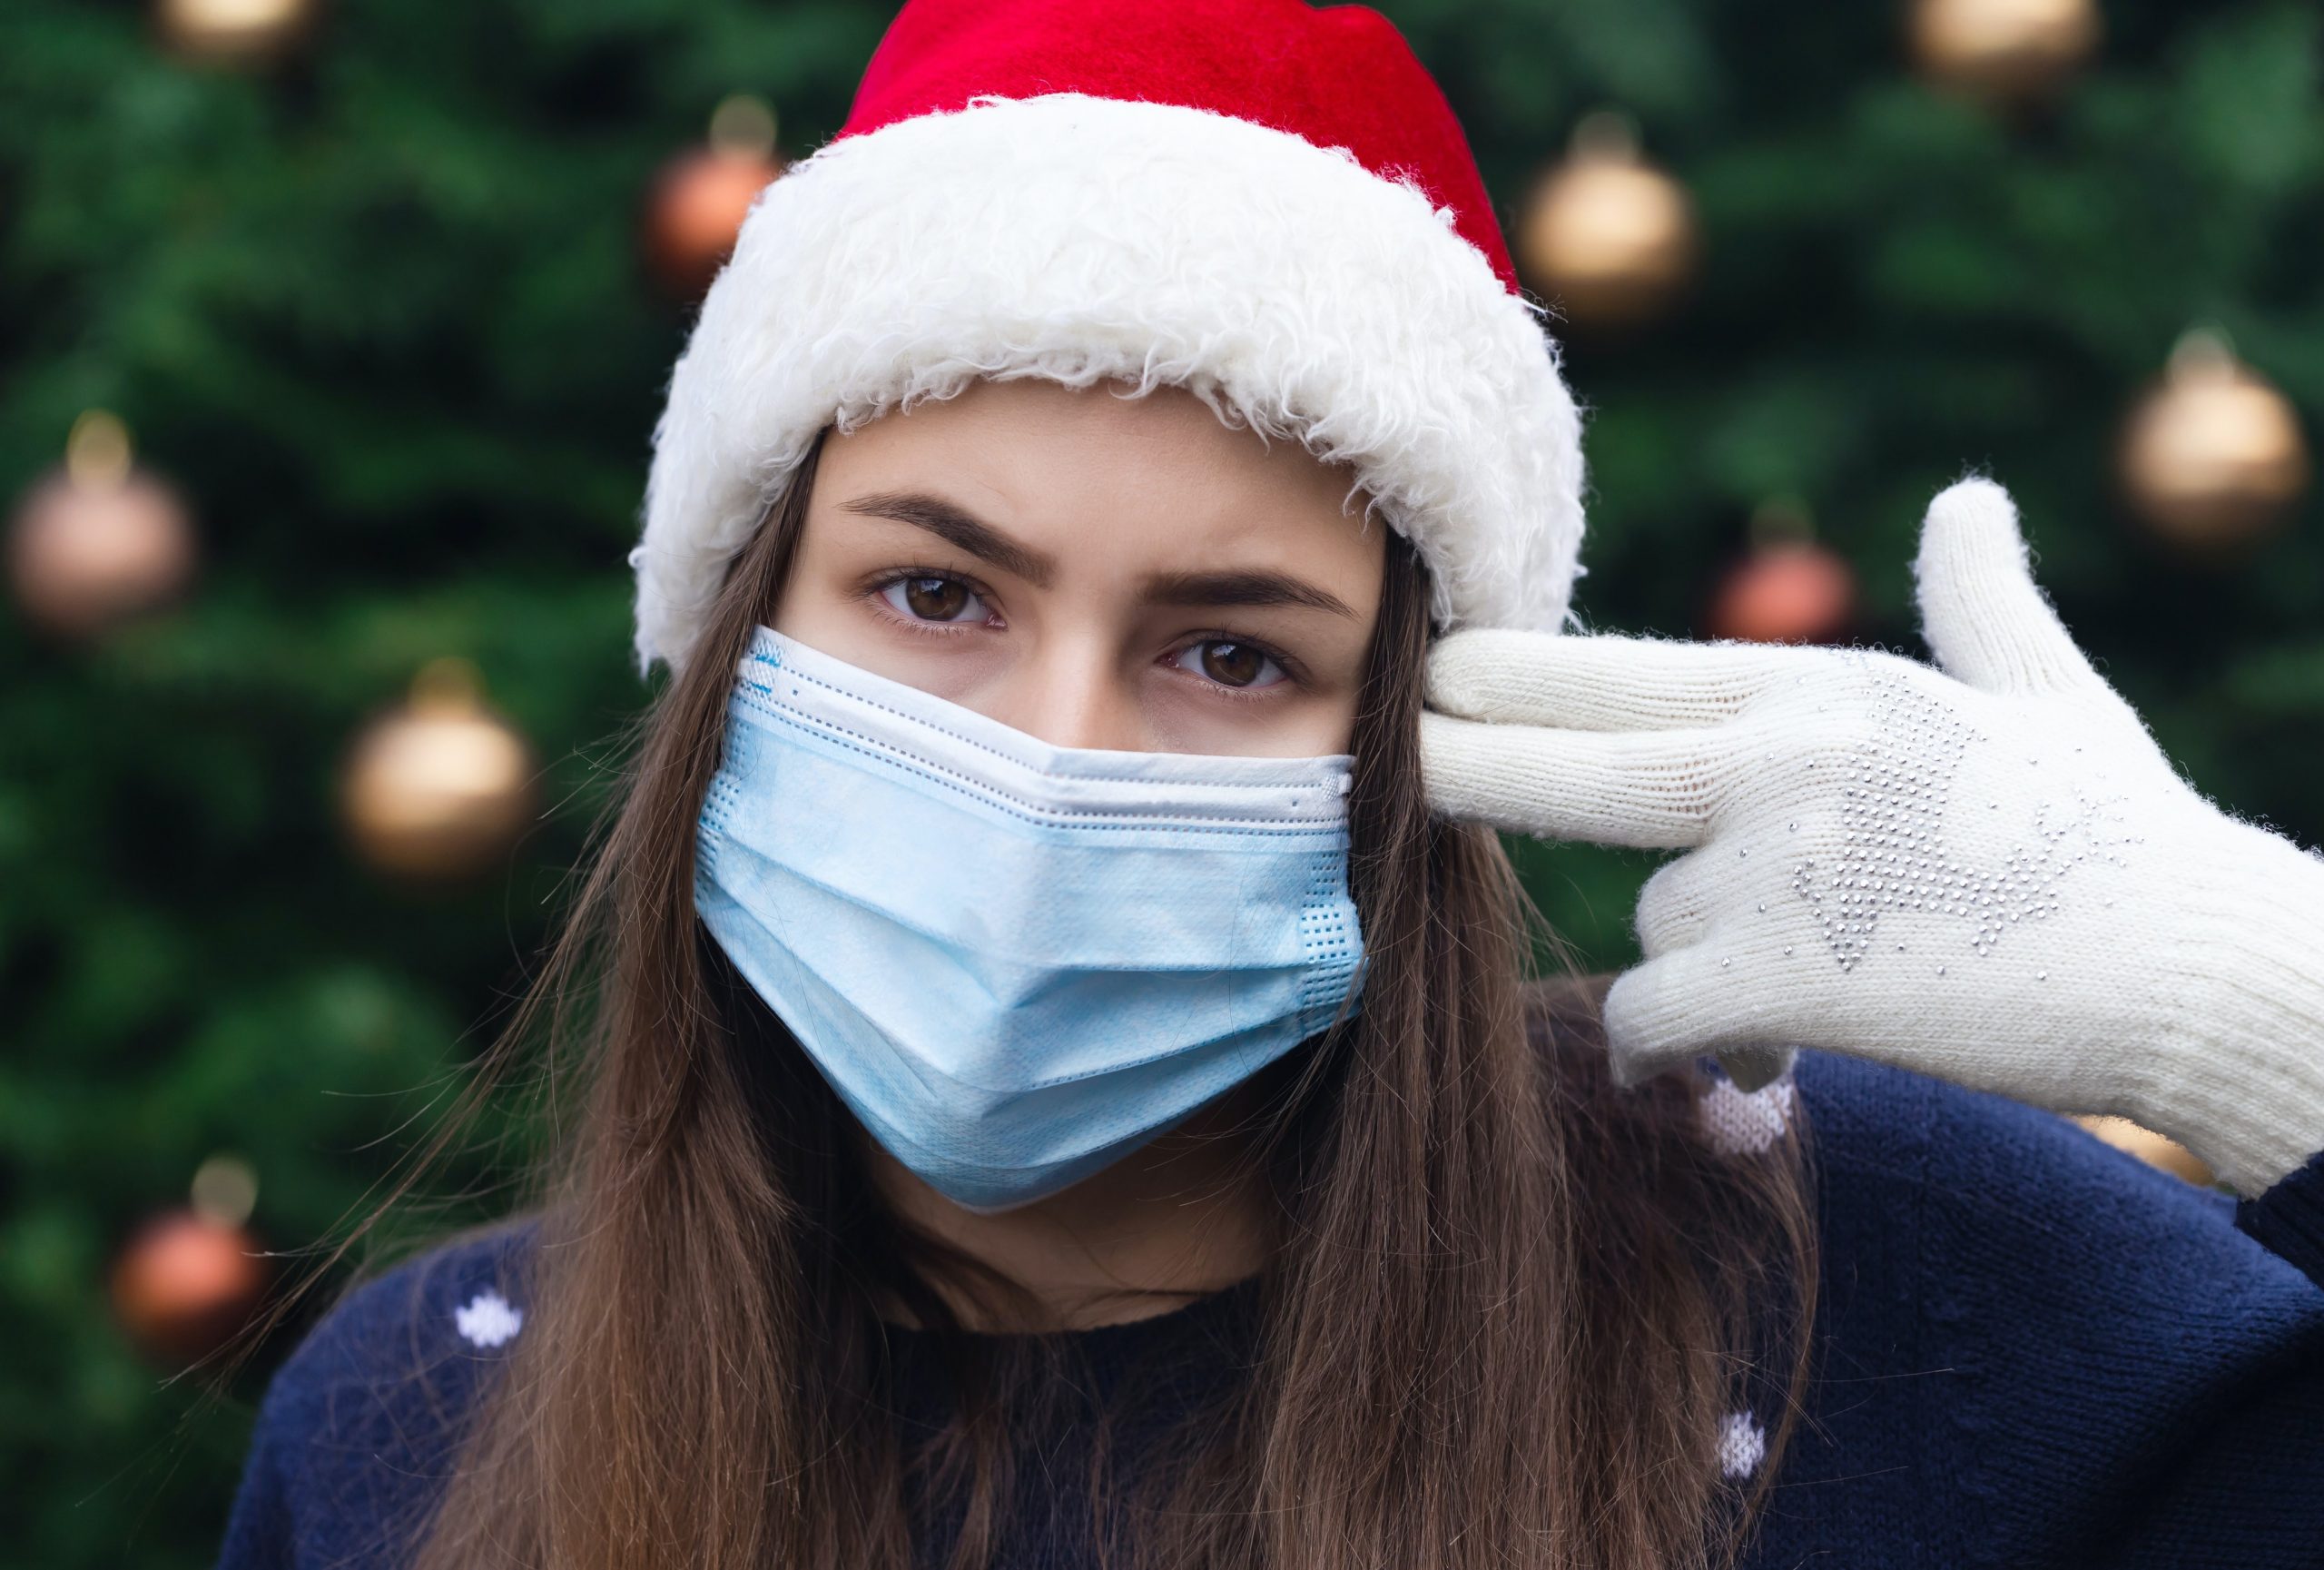 Le groupe d'experts covid en Belgique (GEMS) alerte sur les possibles contaminations lors des prochaines fêtes de Noël.